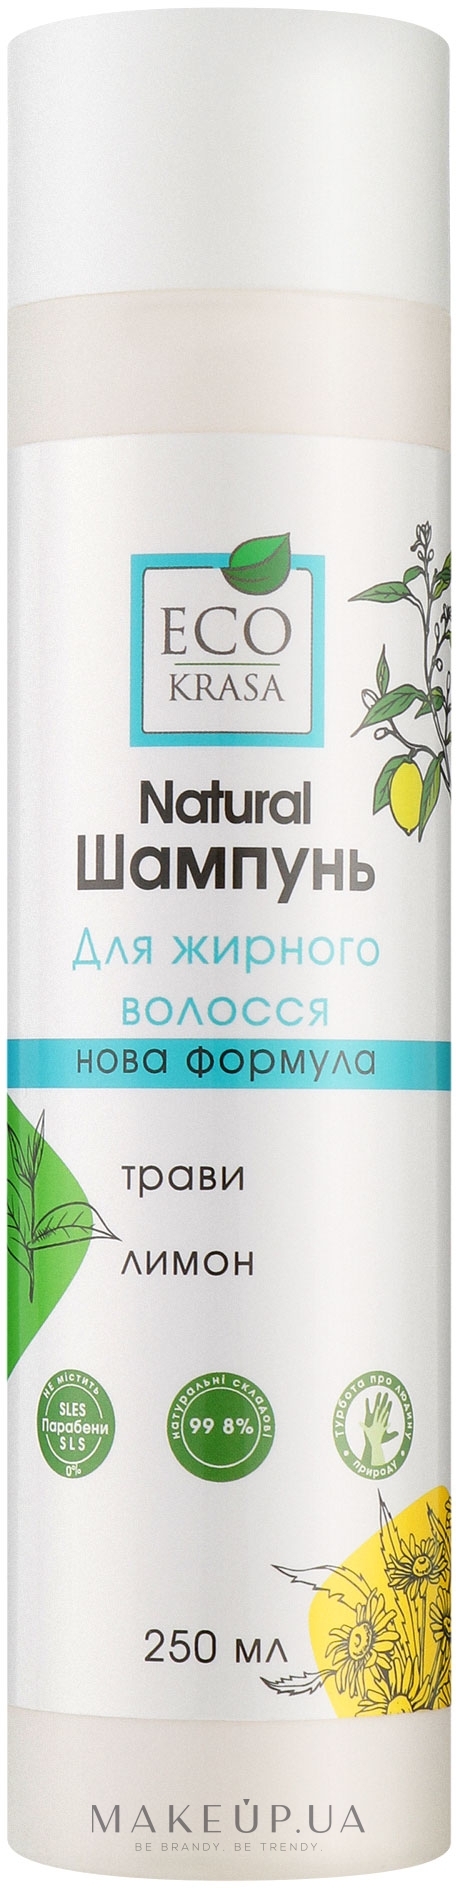 Шампунь для жирных волос (Natural) "Травы и лимон" - Eco Krasa  — фото 250ml